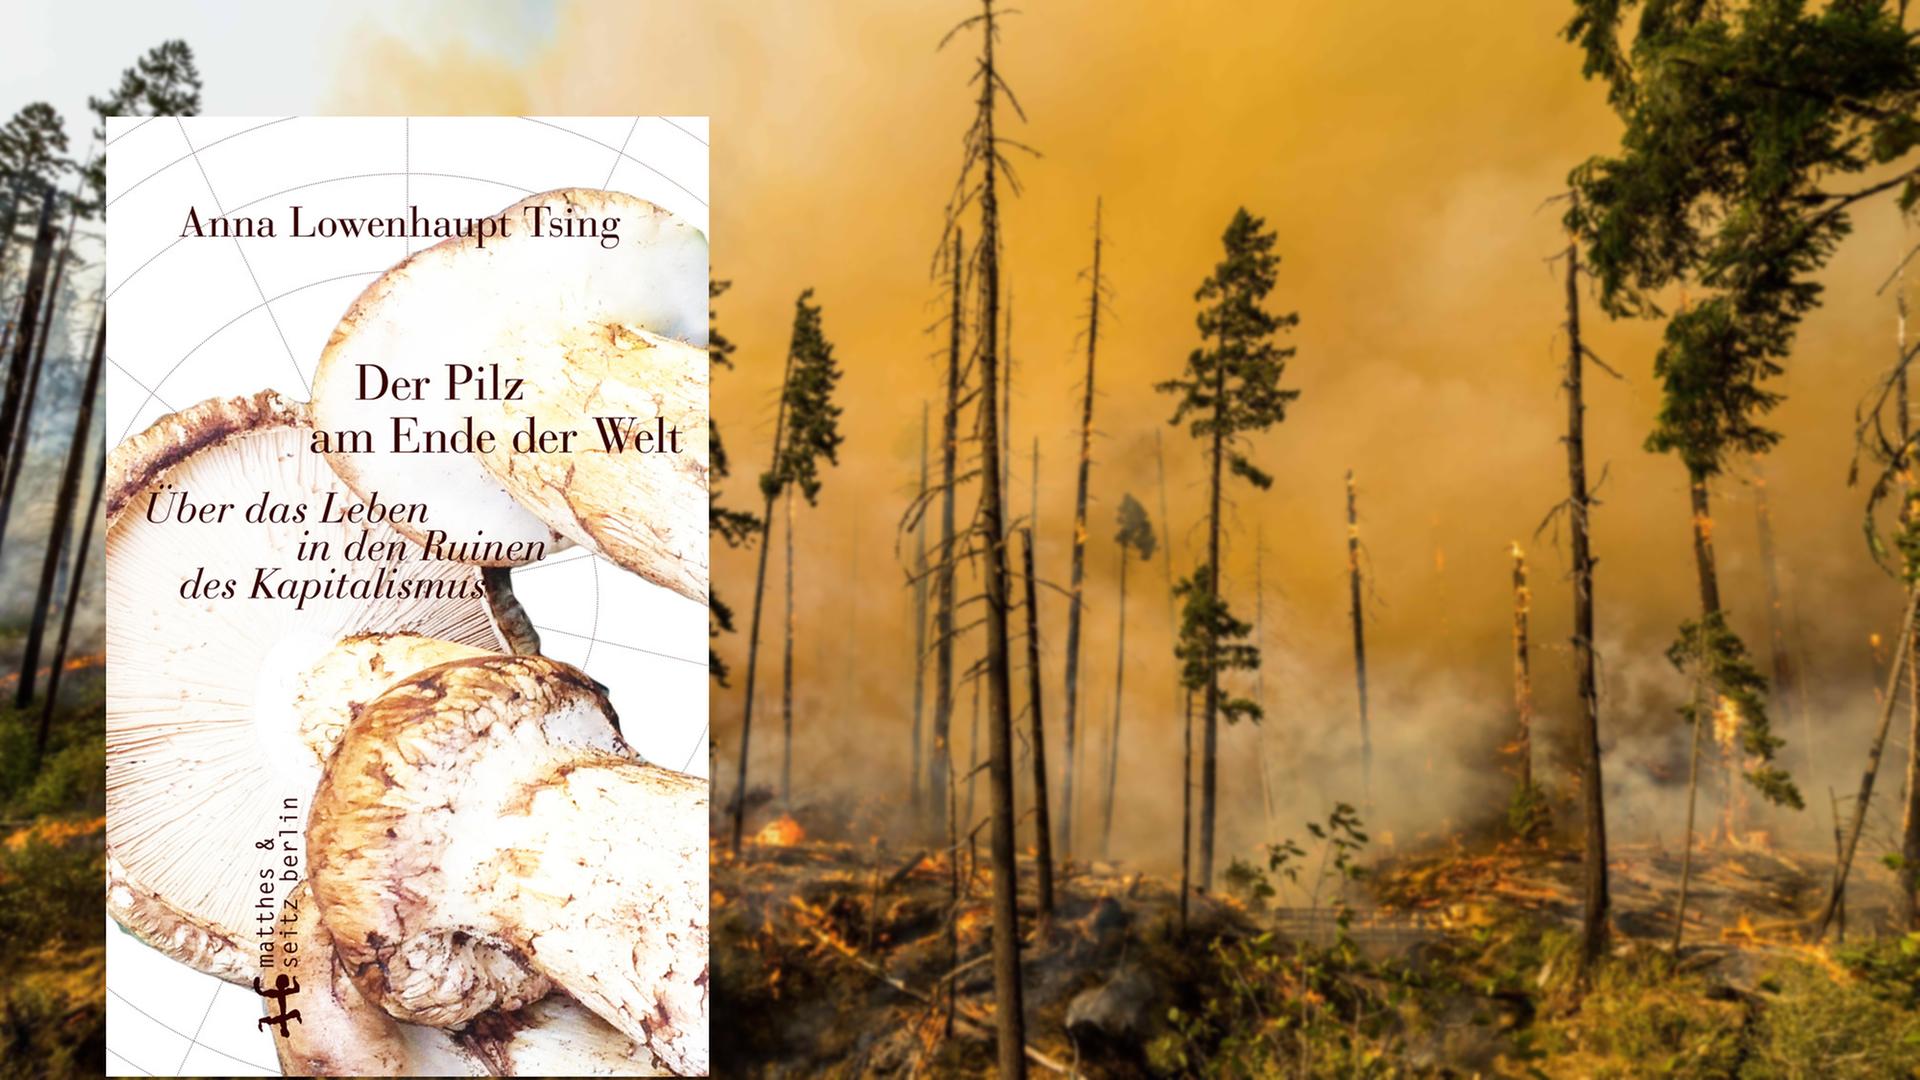 Cover von "Der Pilz am Ende der Welt" vor einem Bild von einem Waldbrand